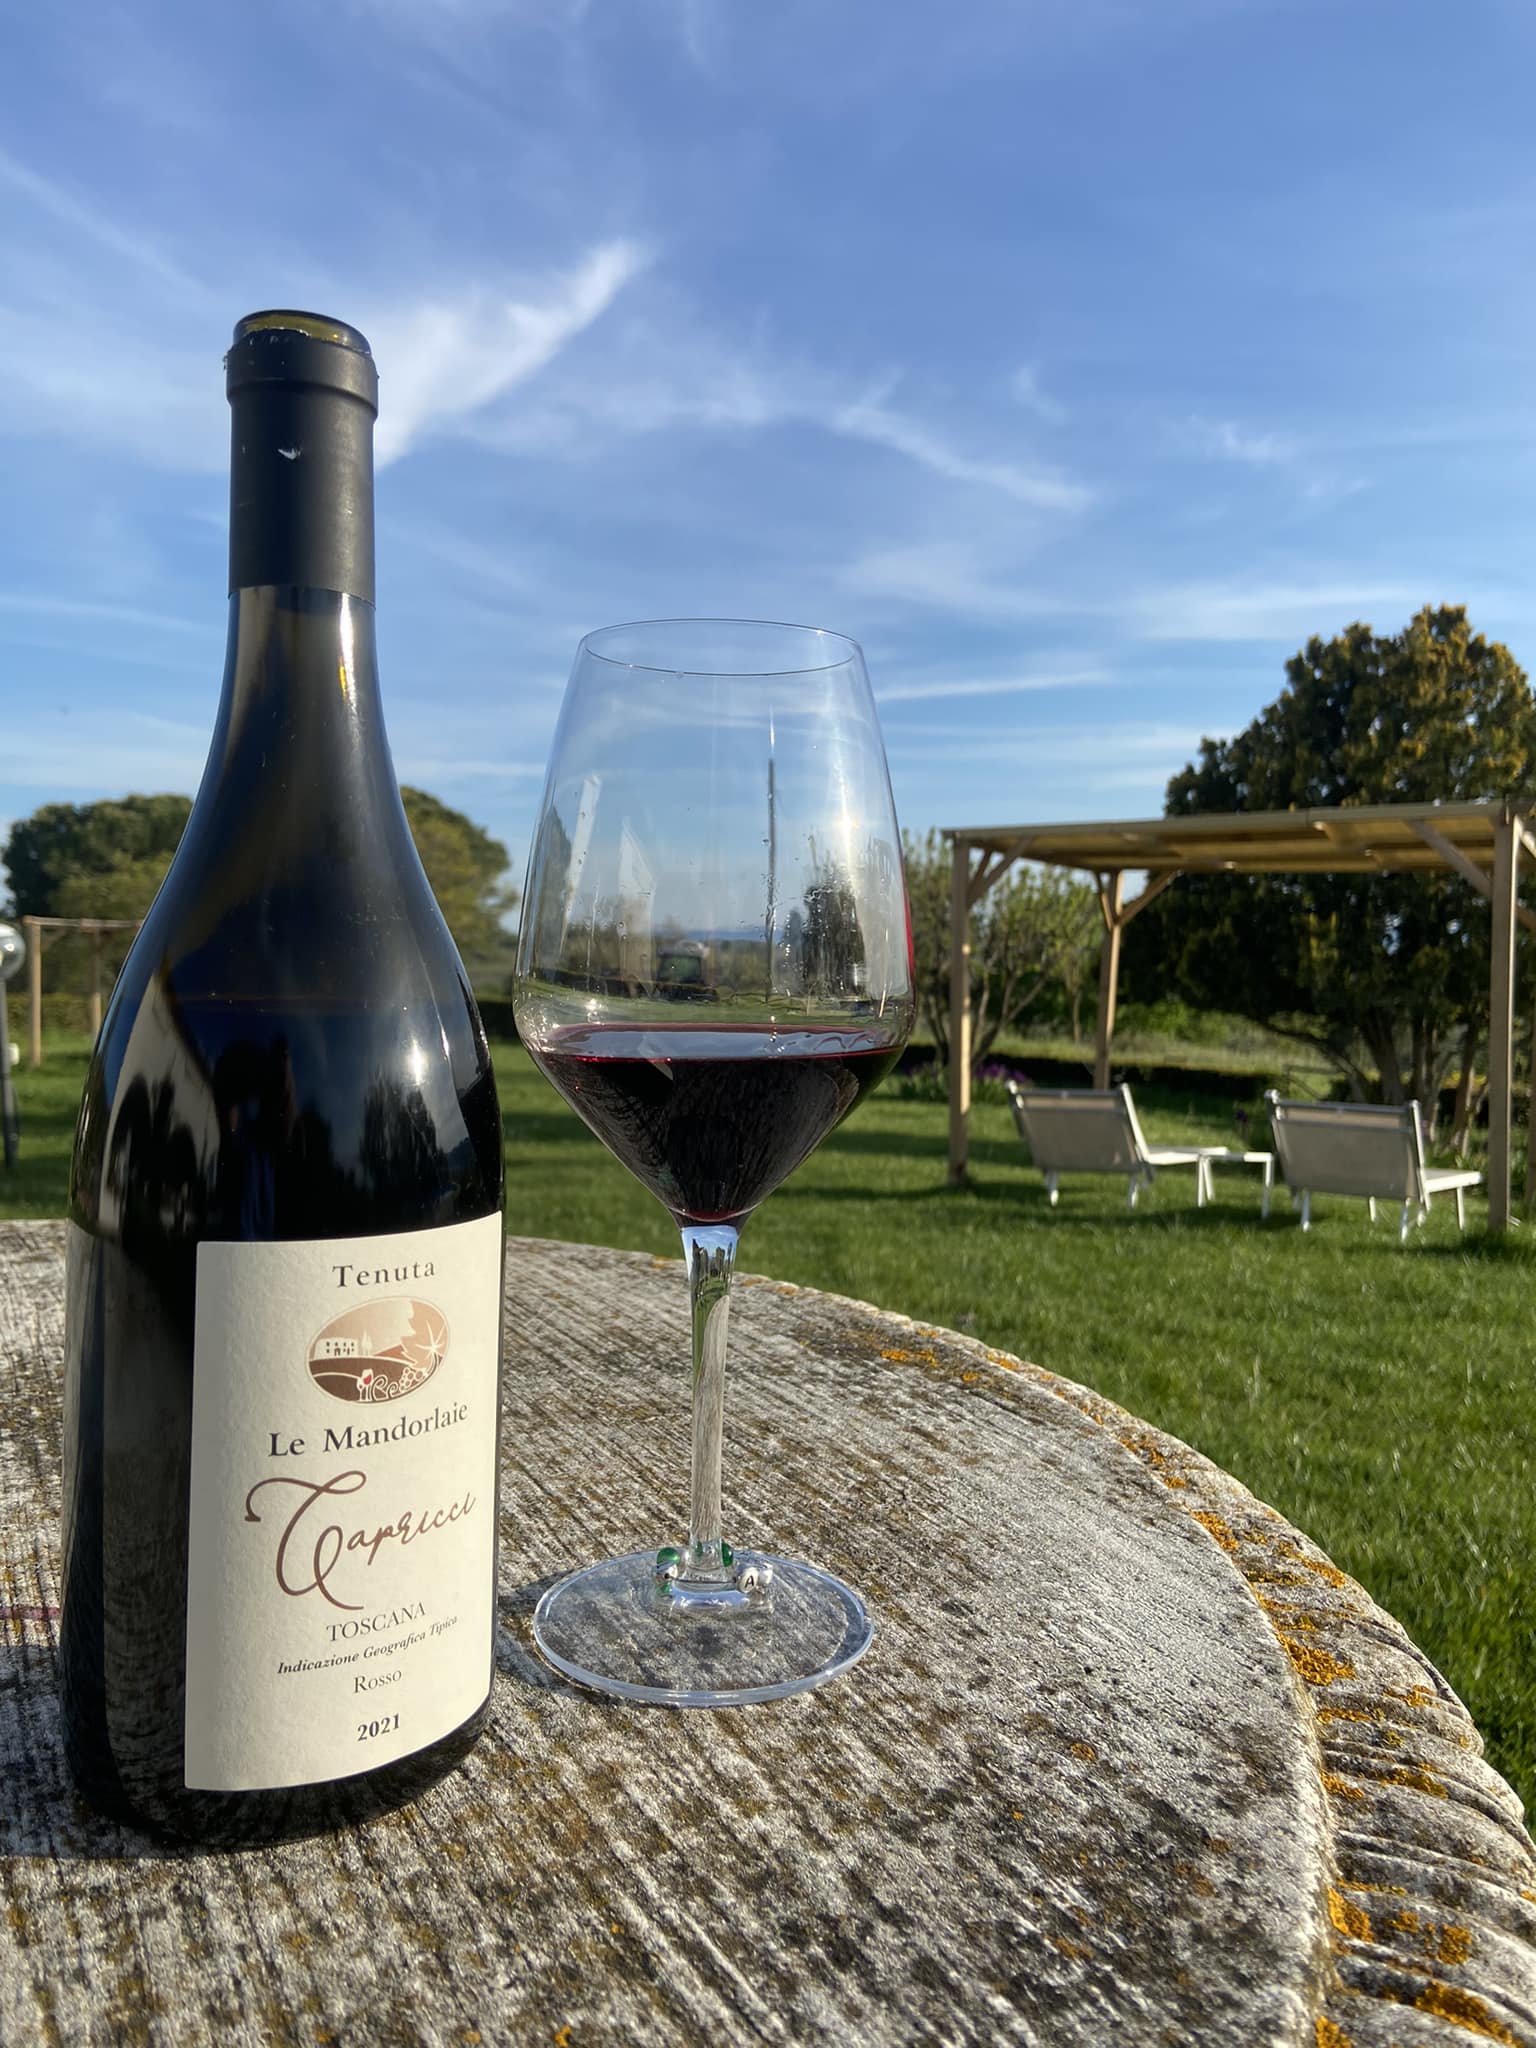 Sustainable Organic vineyard Tuscany with accommodation